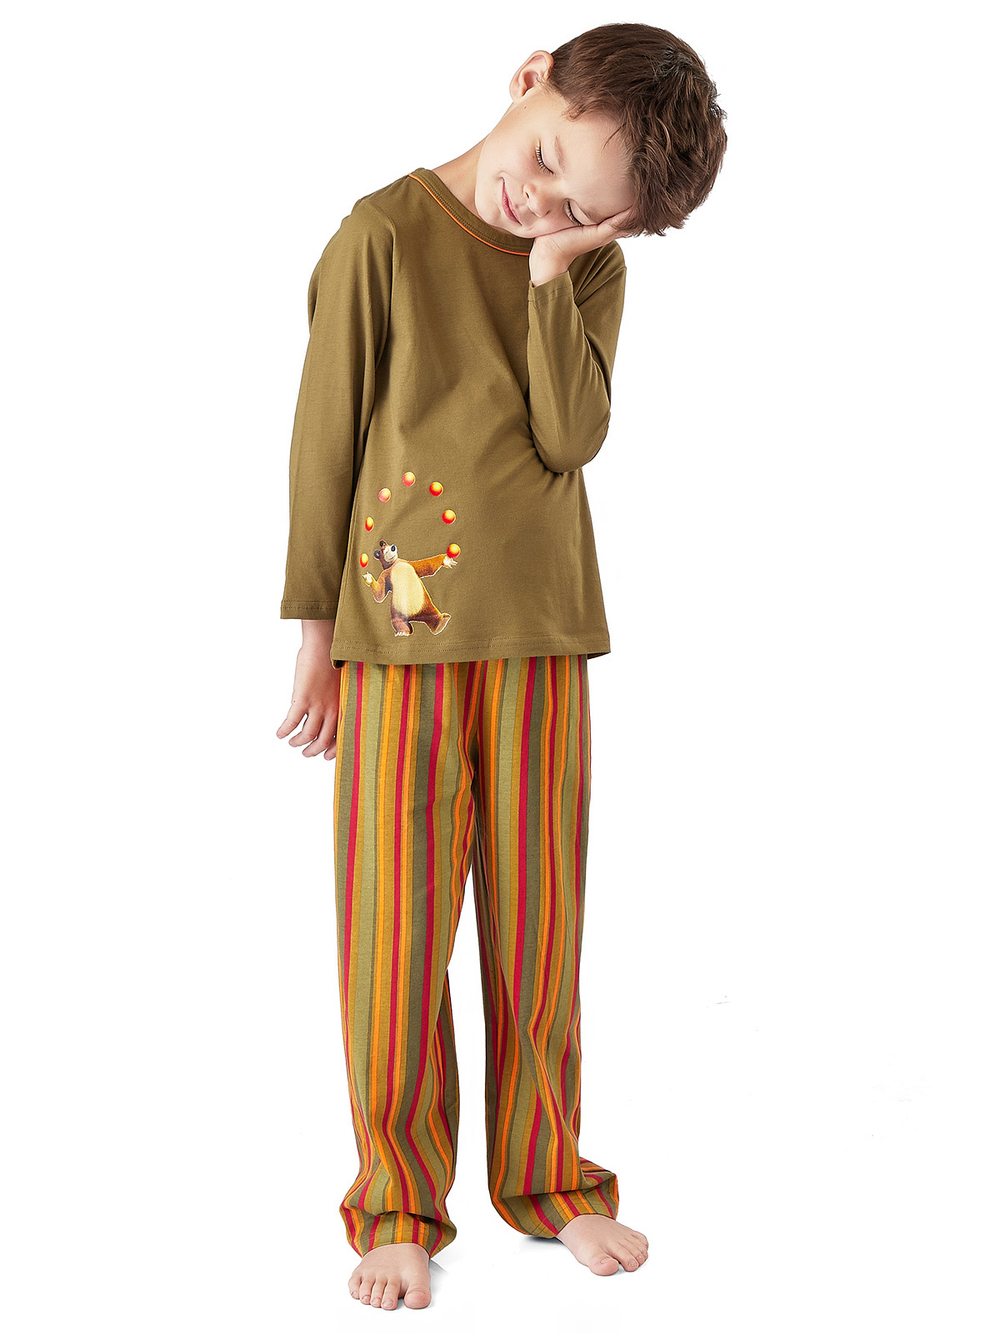 BPG-69 пижама для мальчика "Маша и Медведь"